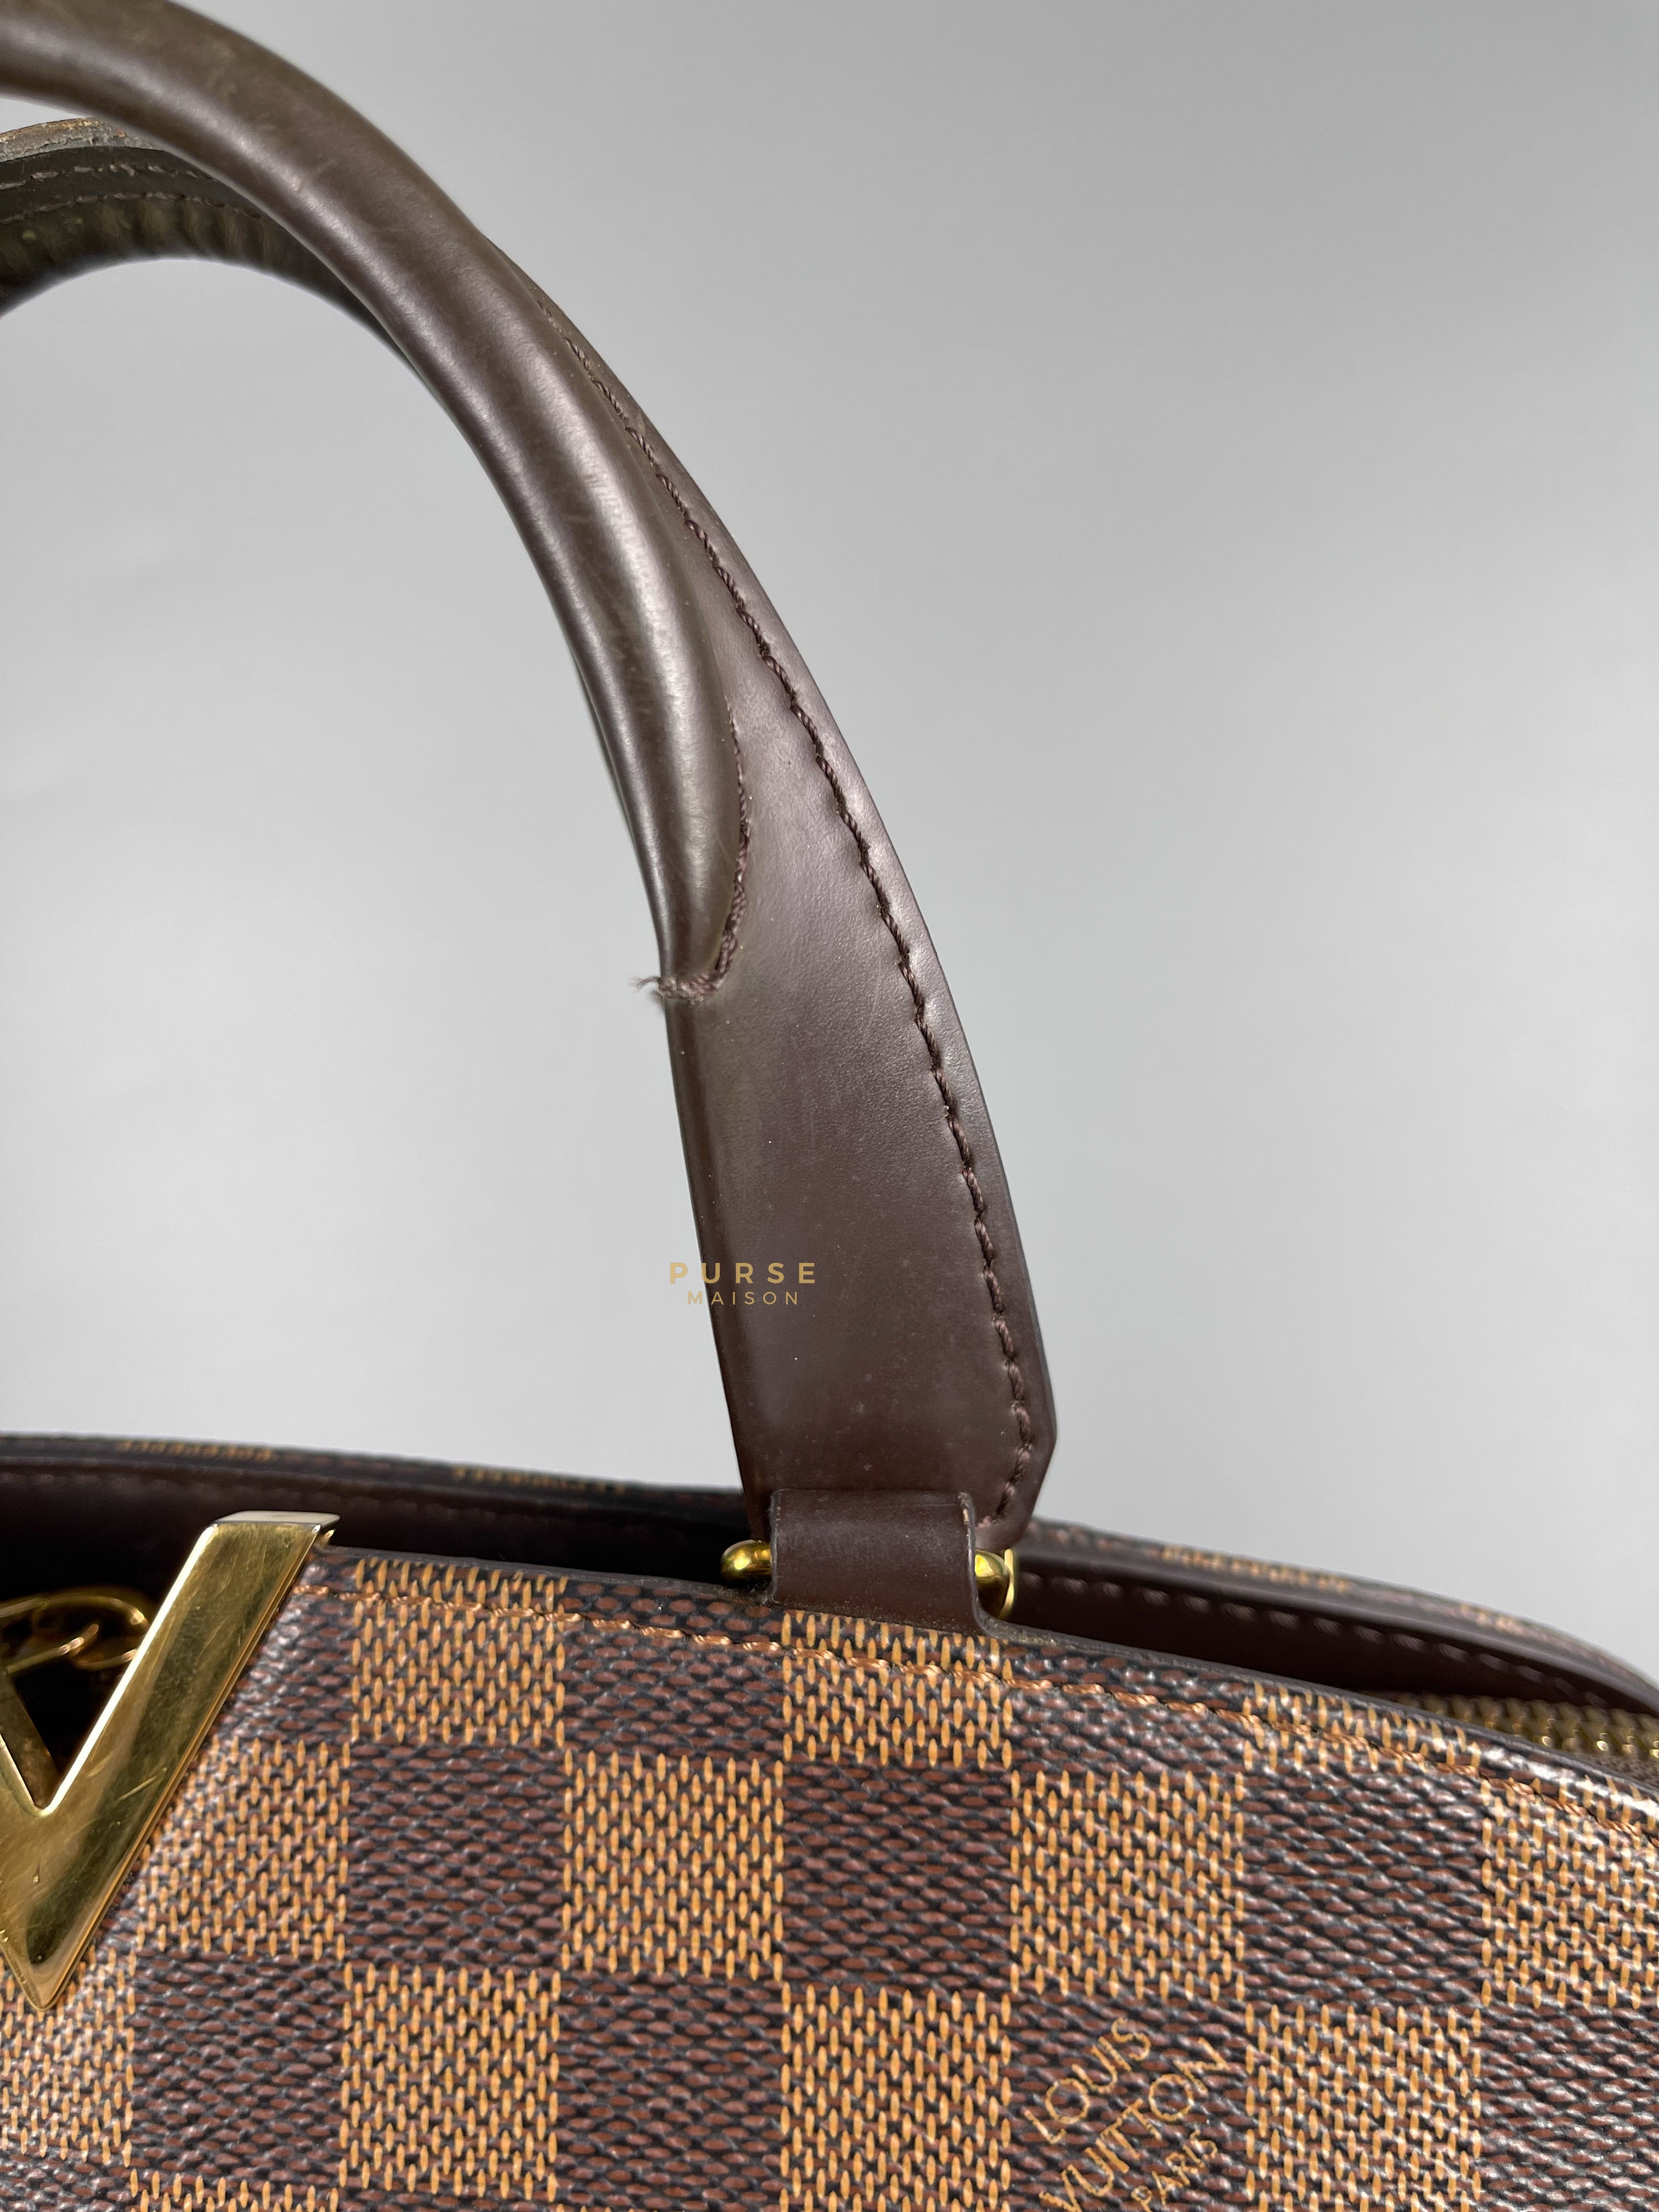 Louis Vuitton Kensington Bowling 2Way Damier Ebene Canvas Shoulder Bag (Date Code: TJ1176) | Purse Maison Luxury Bags Shop